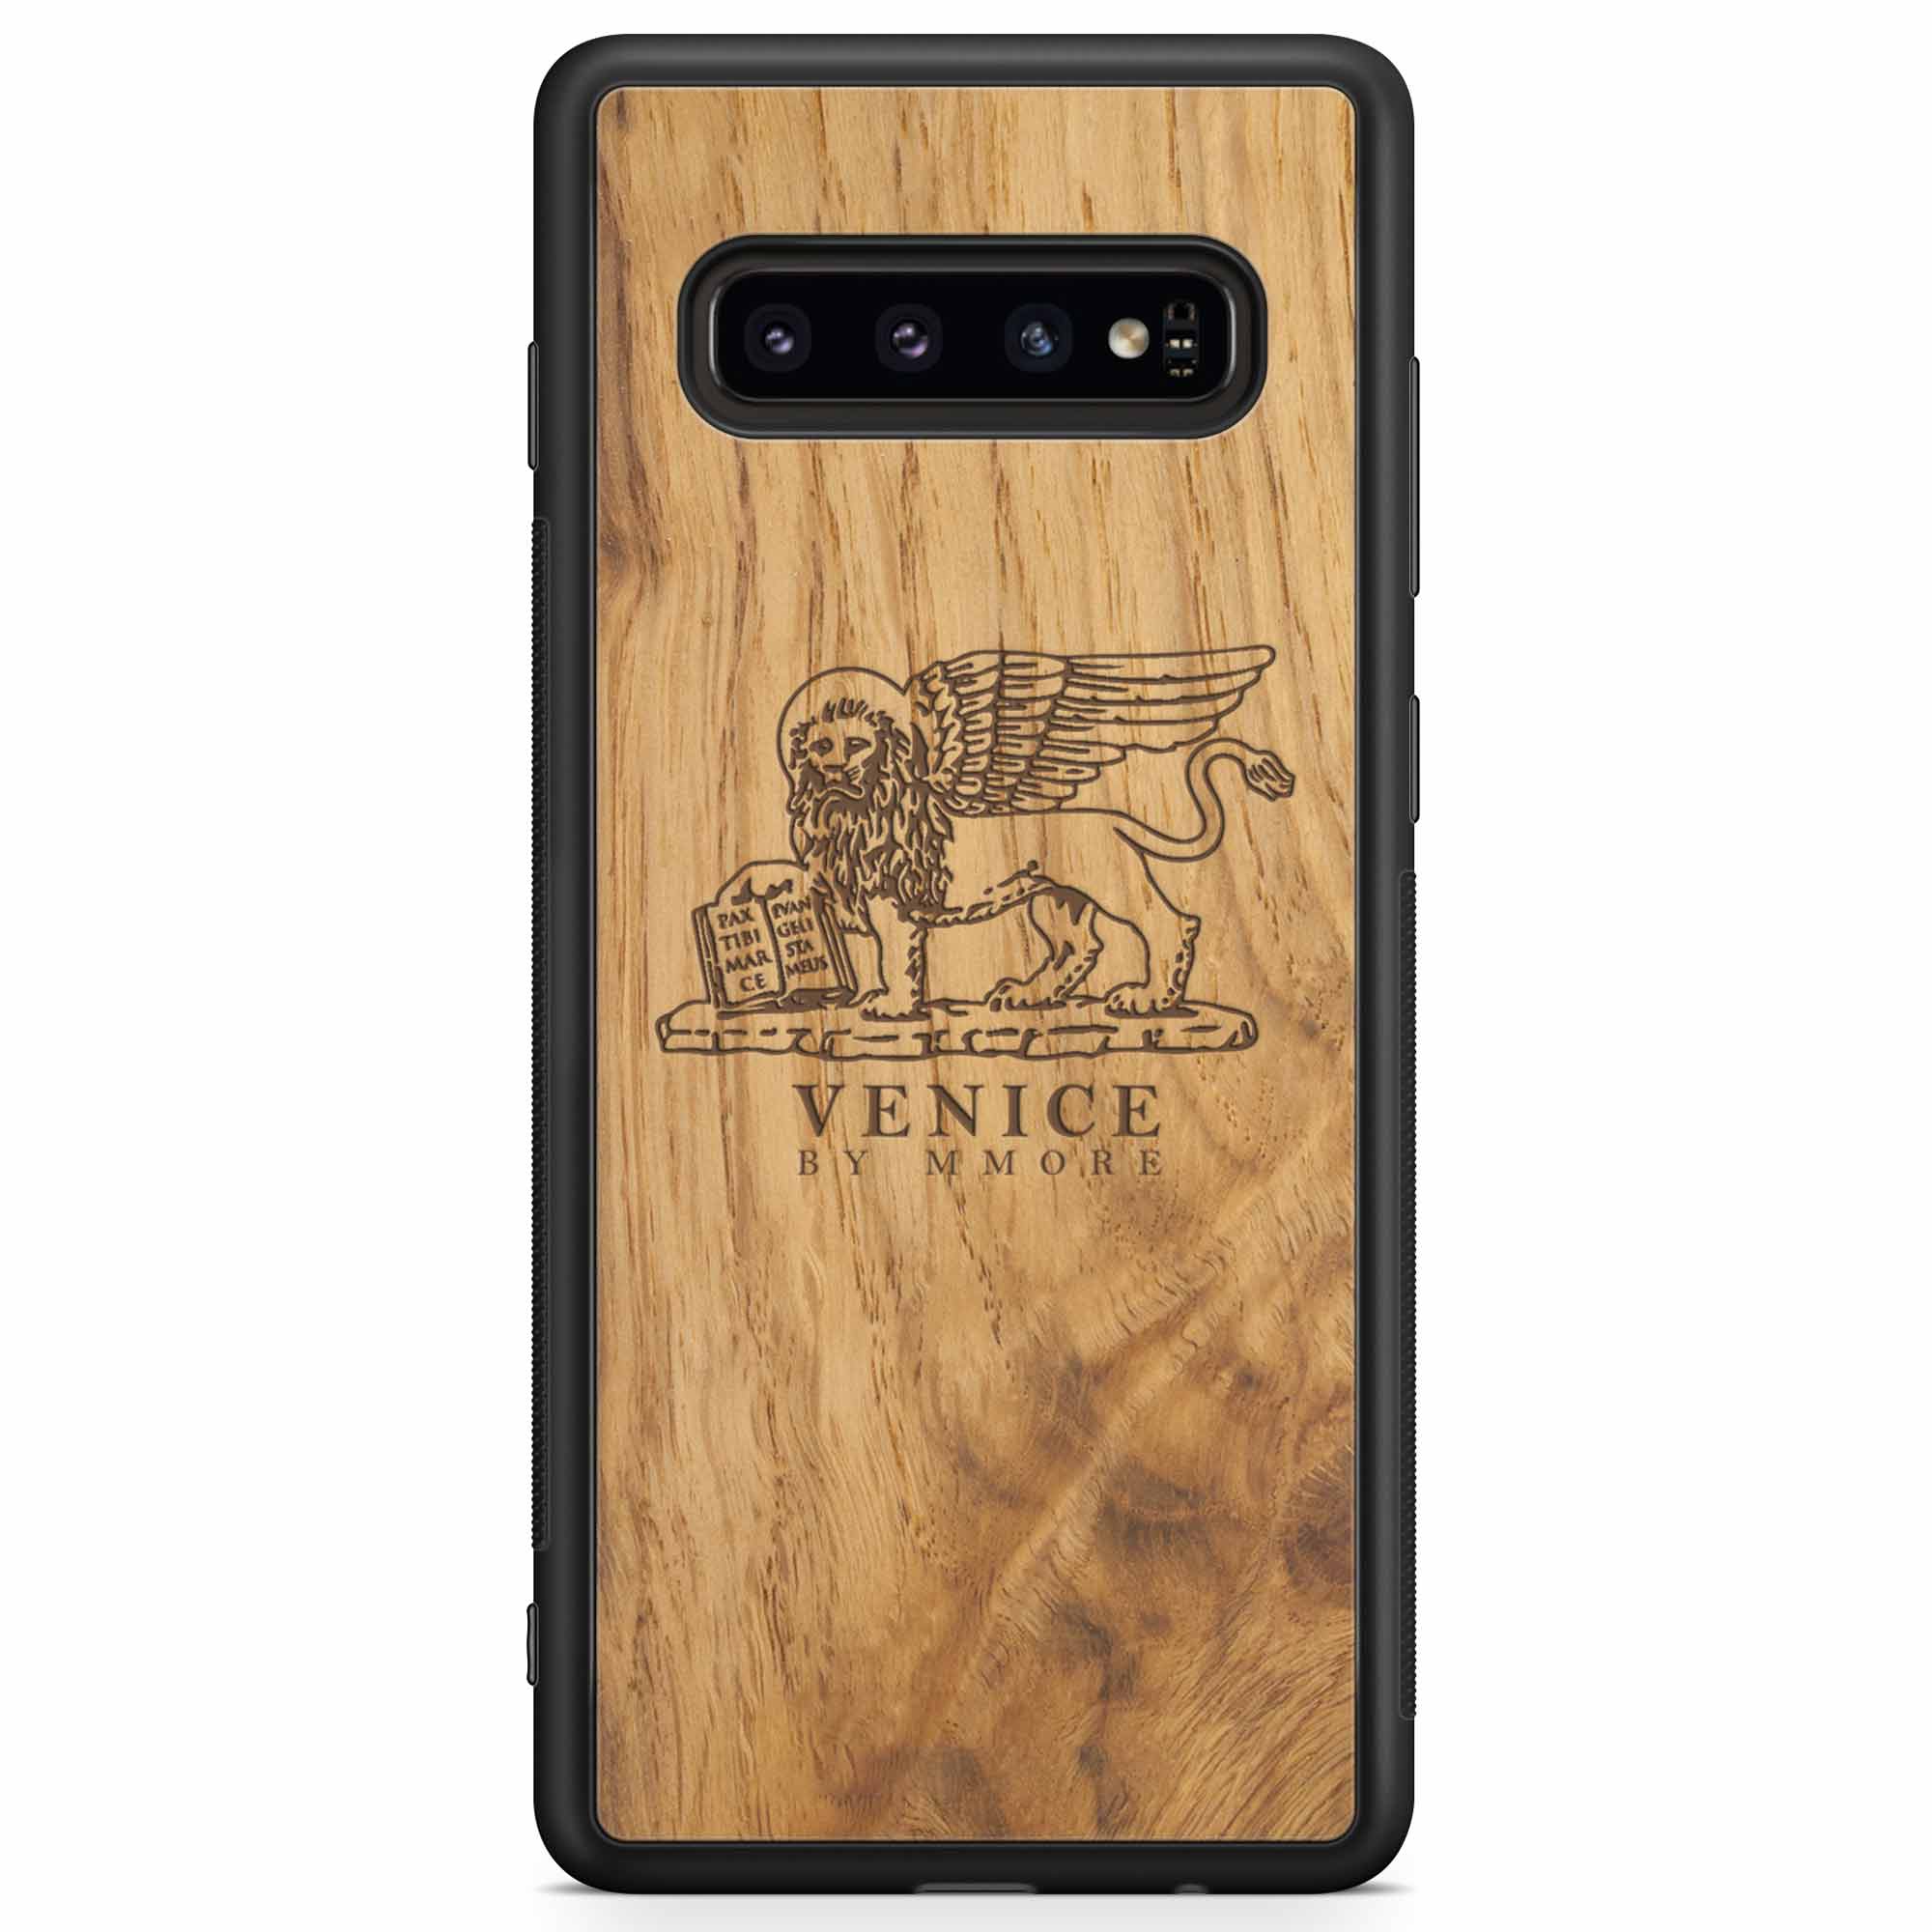 Venice Lion Samsung S10 Carcasa de madera antigua para teléfono